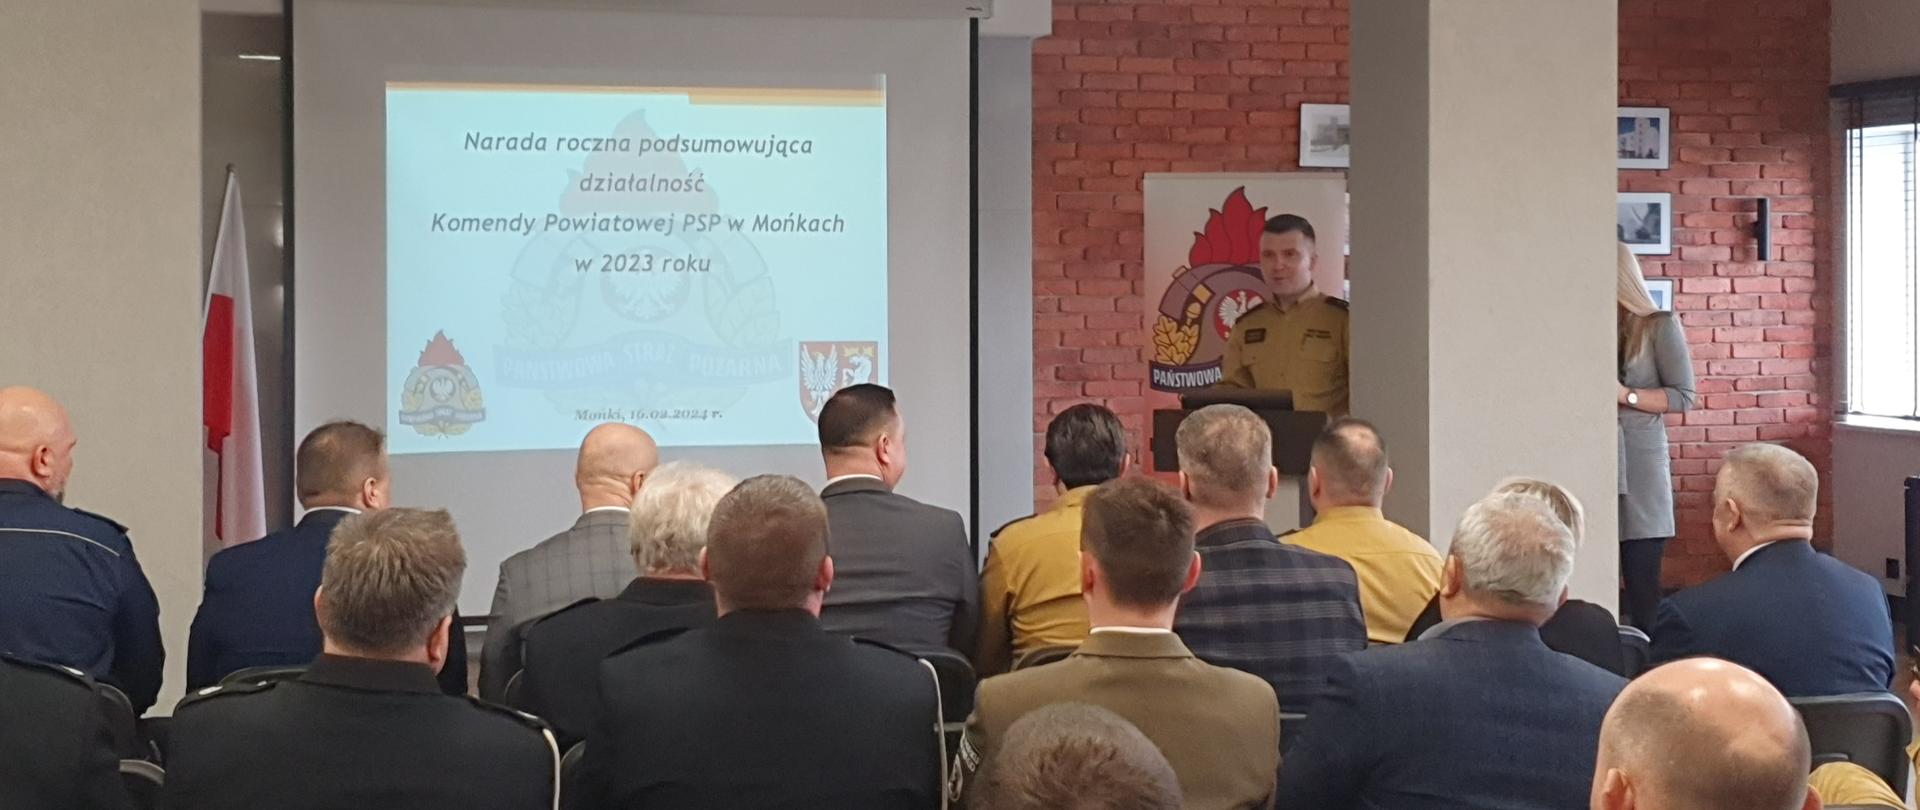 Narada roczna podsumowująca działalność Komendy Powiatowej PSP w Mońkach w roku 2023.